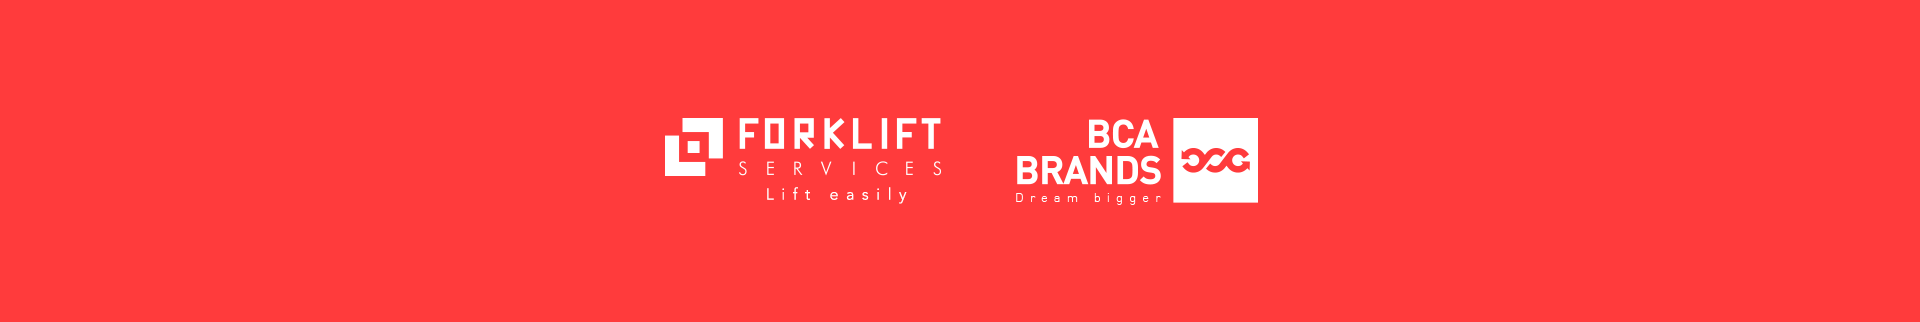 forklift-service-bca-brands